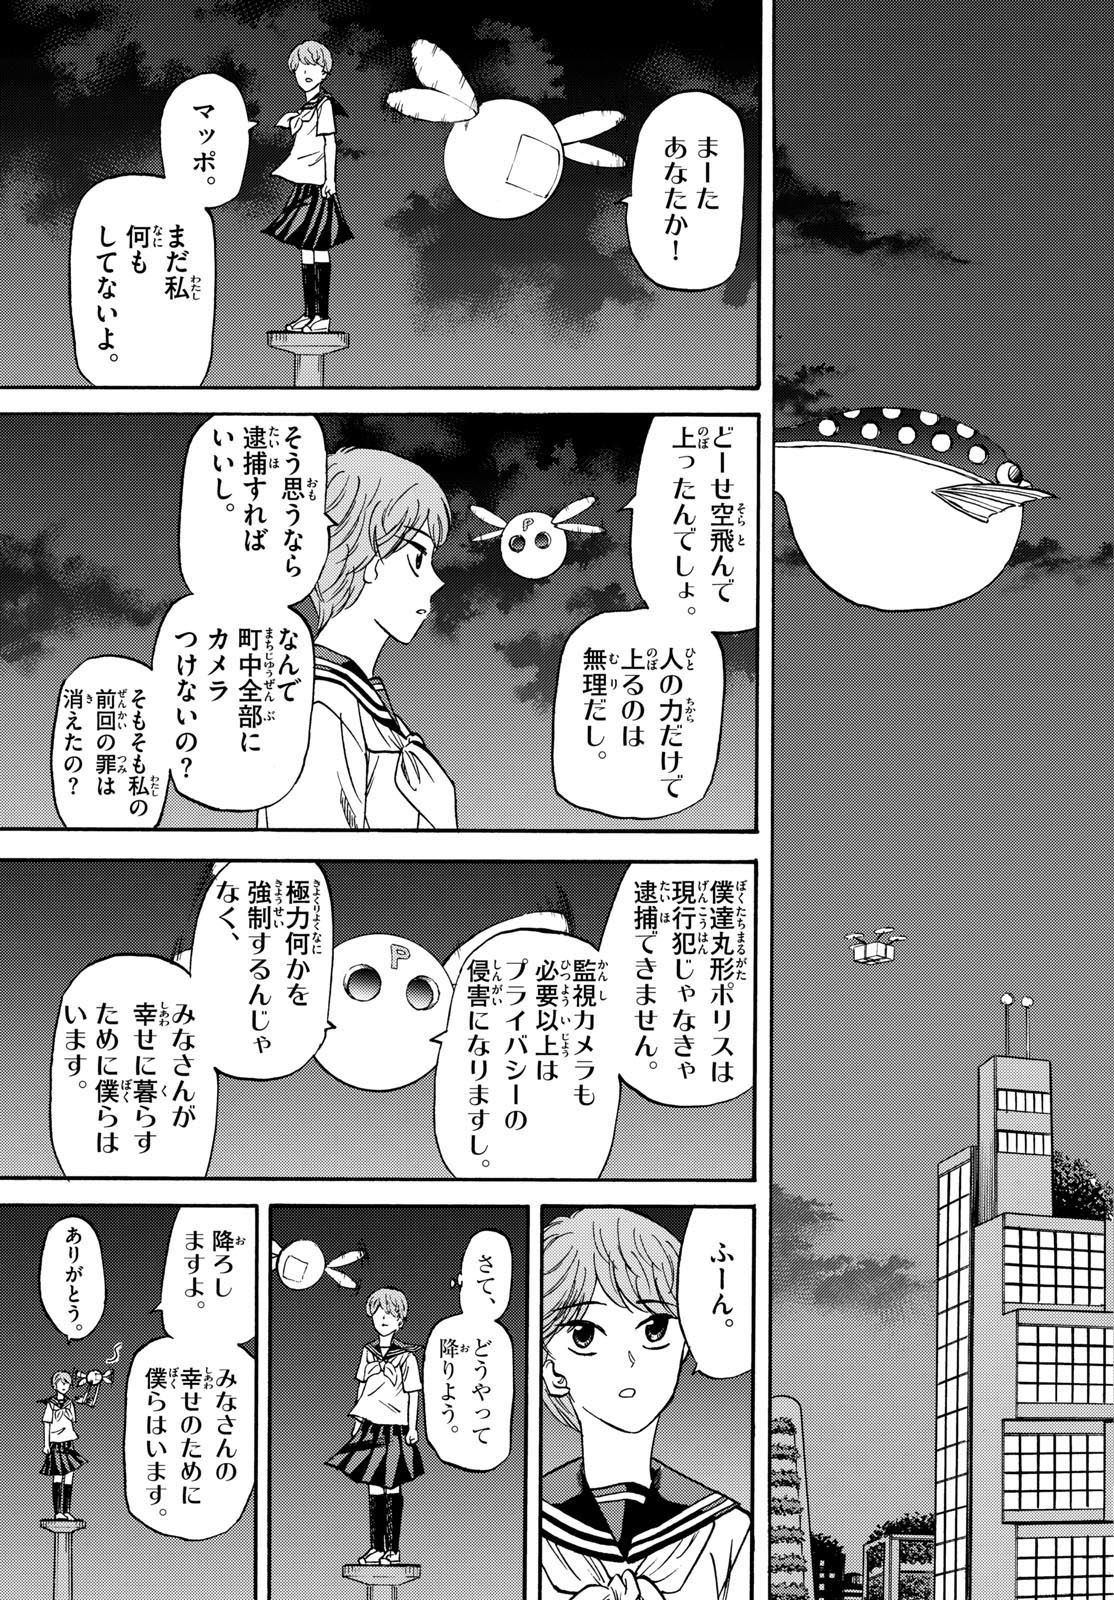 Tatsu to Ichigo - Chapter 190 - Page 15